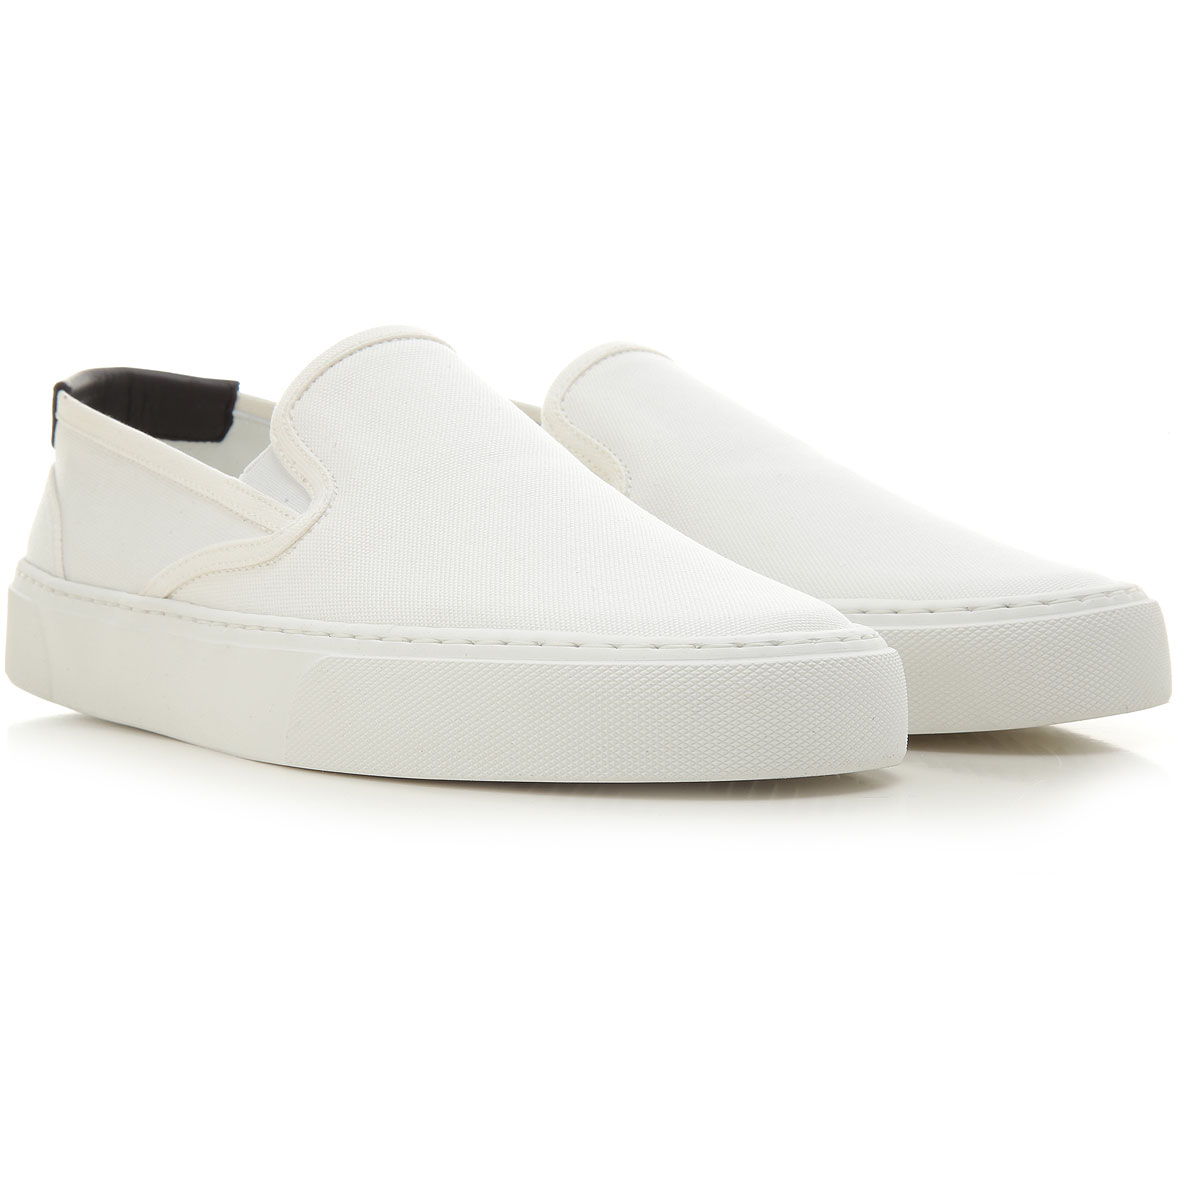 Mens Shoes Saint Laurent, Style code: 585742-glln0-9061